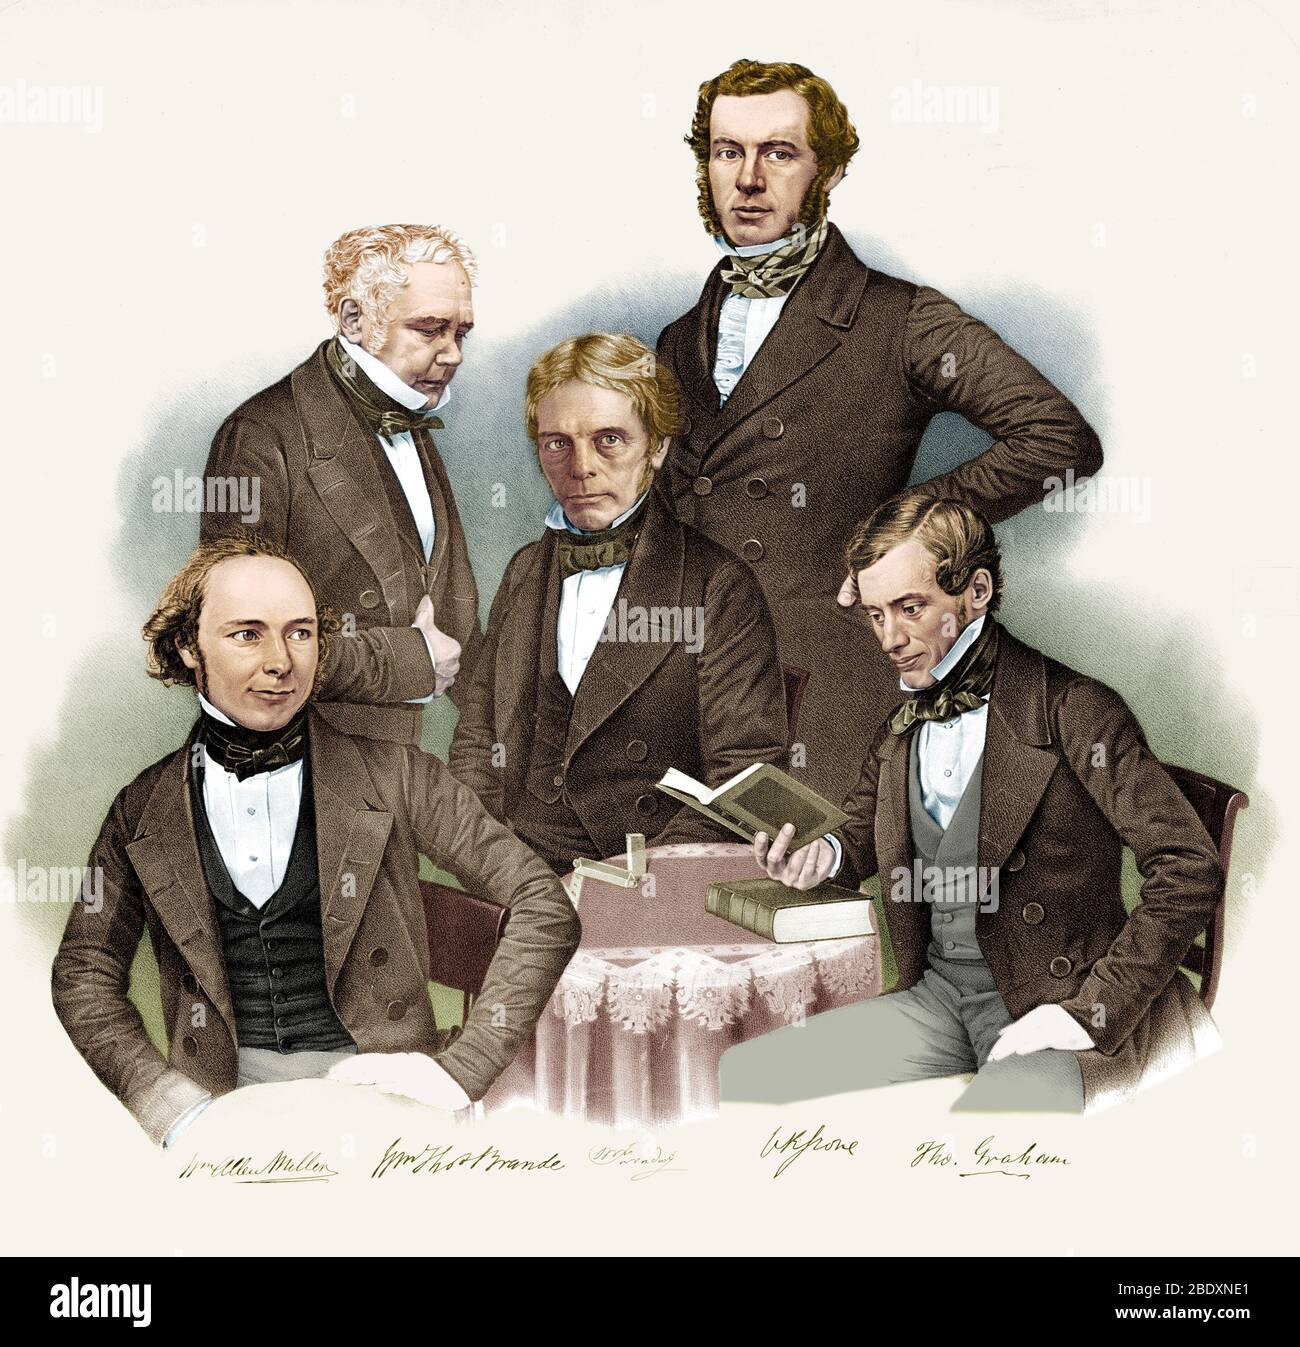 Célèbres chimistes anglais, 1850 Banque D'Images